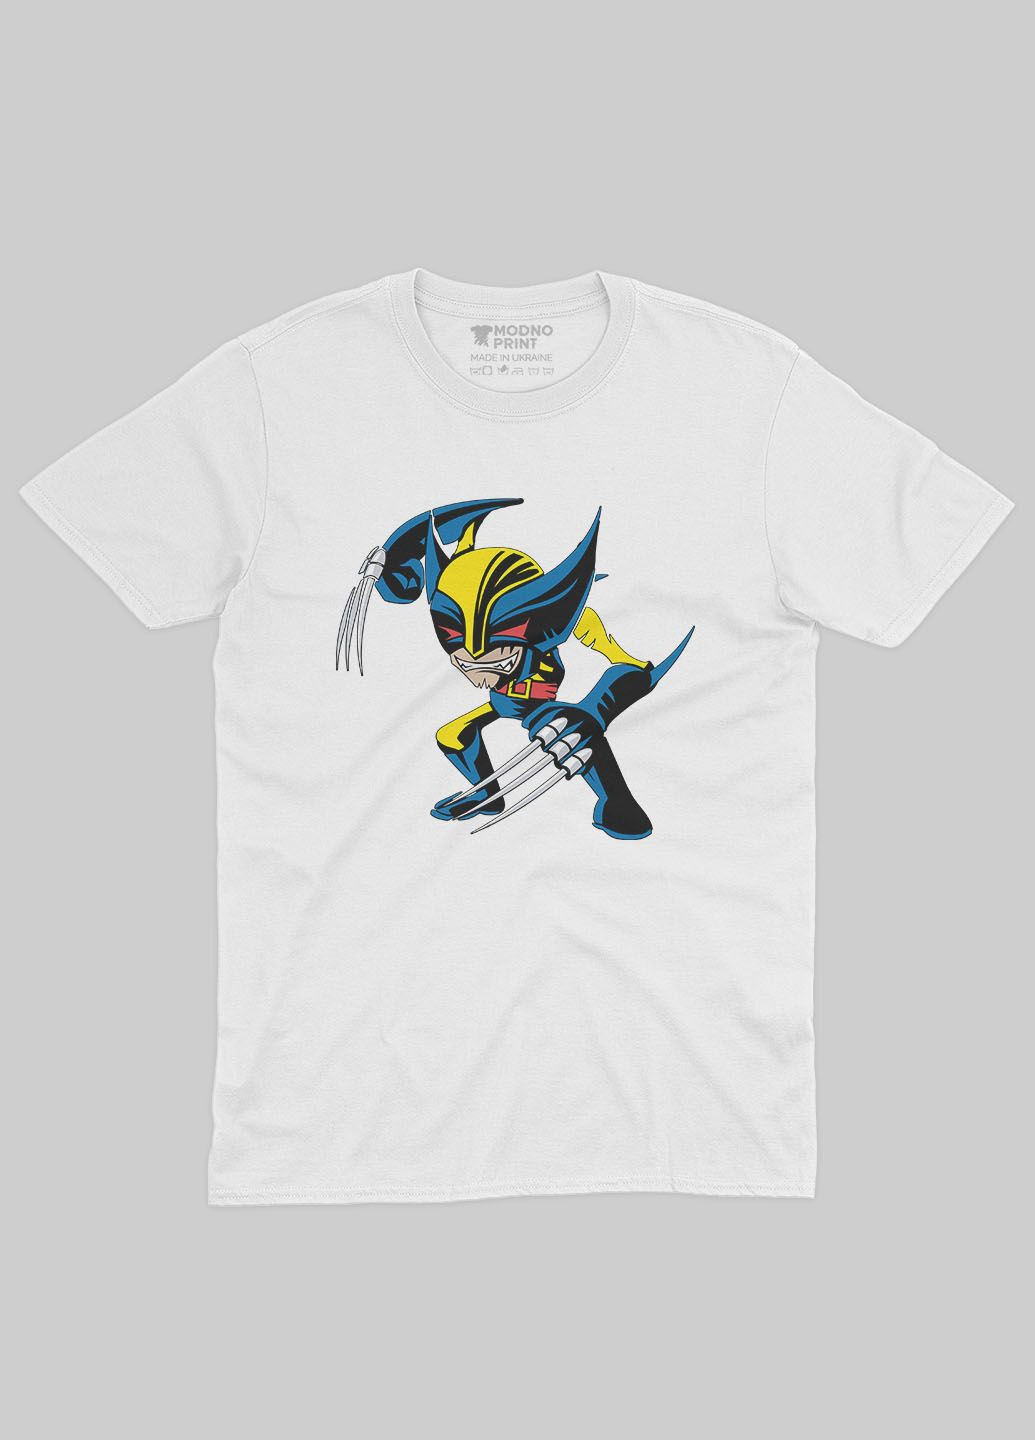 Белая демисезонная футболка для мальчика с принтом супергероя - росомаха (ts001-1-whi-006-021-002-b) Modno